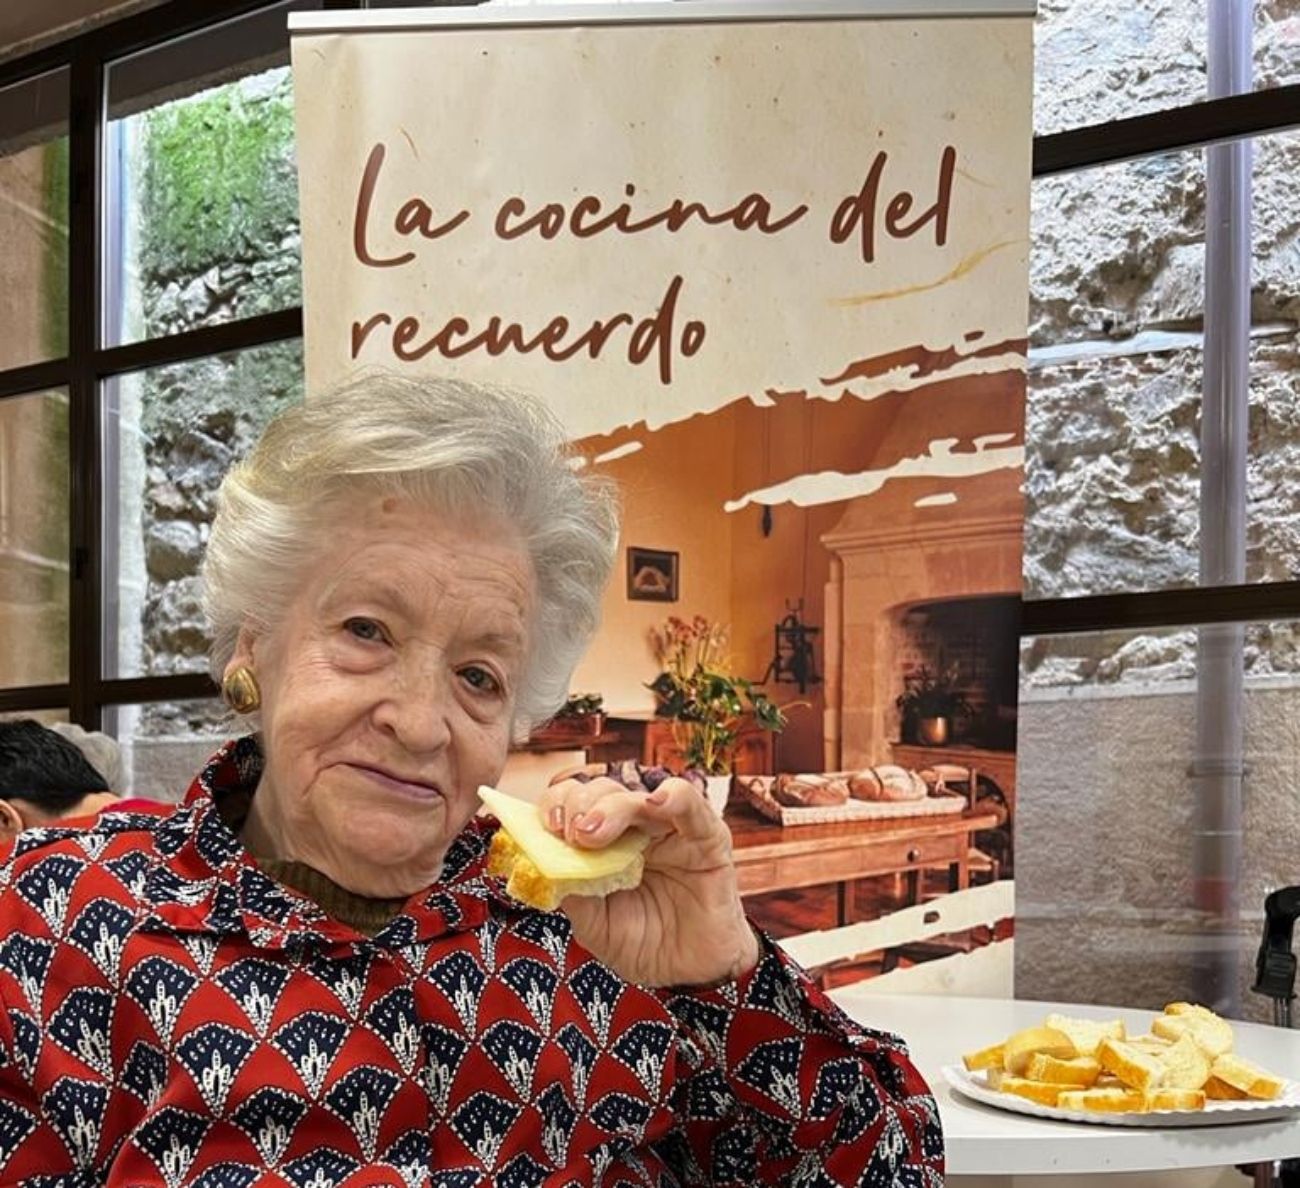 'La cocina del recuerdo' potencia las emociones de las personas mayores a través de la comida